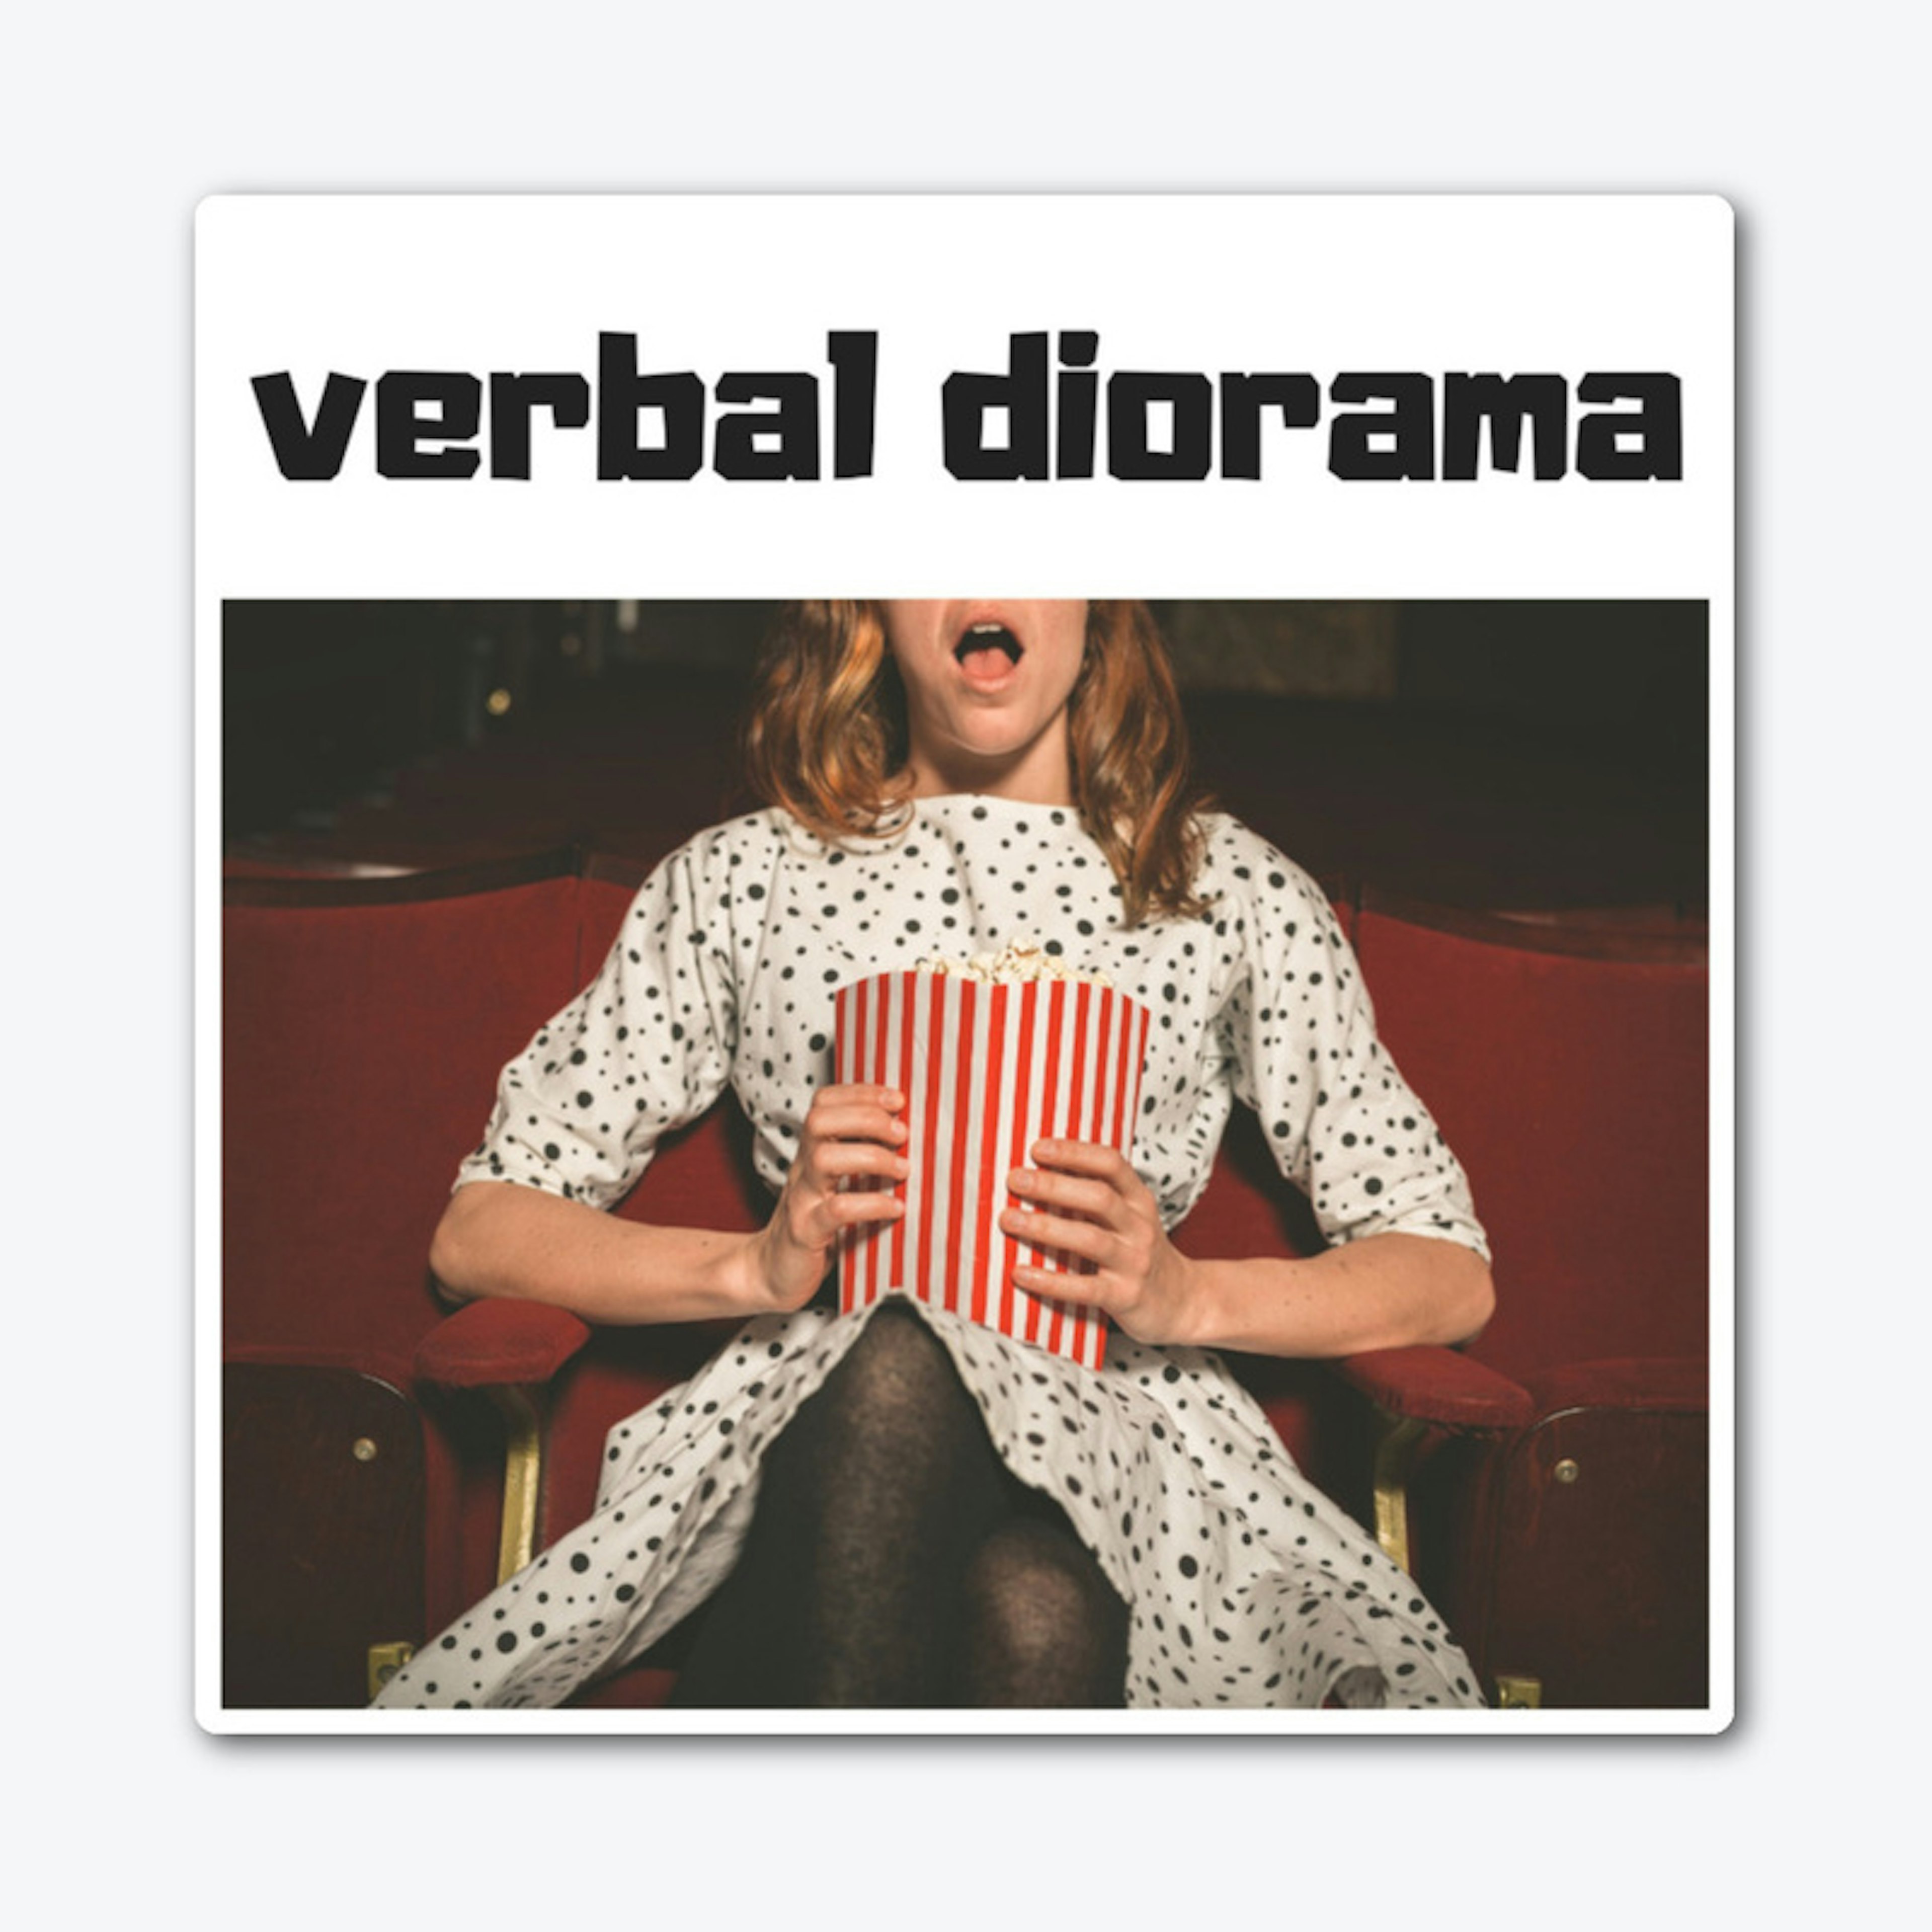 Verbal Diorama Logo